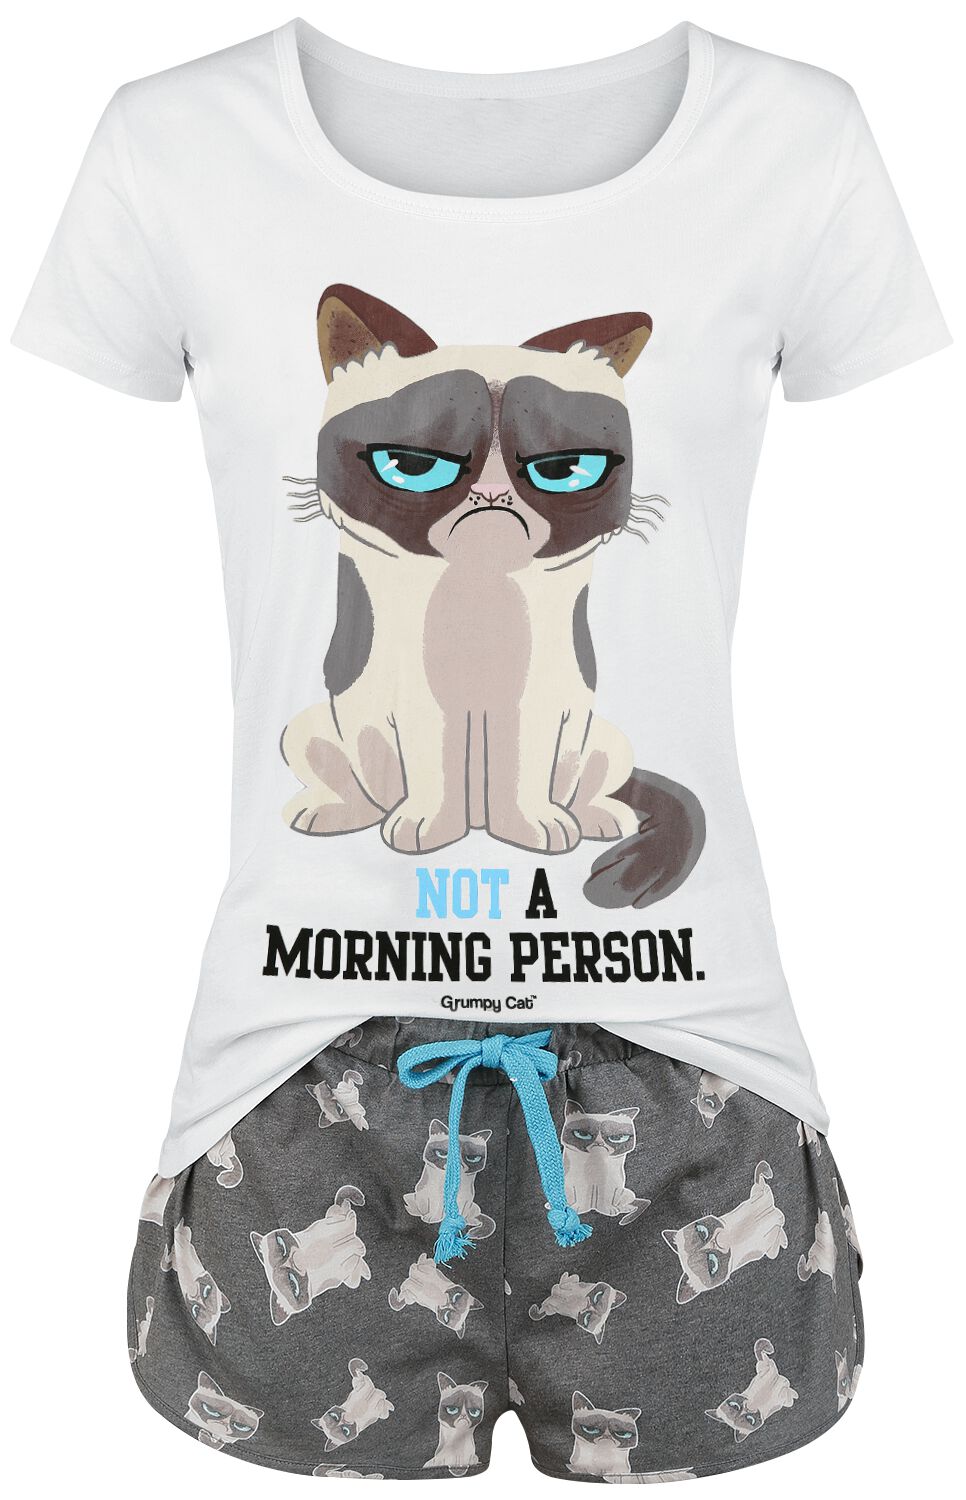 Grumpy Cat Not A Morning Person! Frauen Schlafanzug Grau/weiß